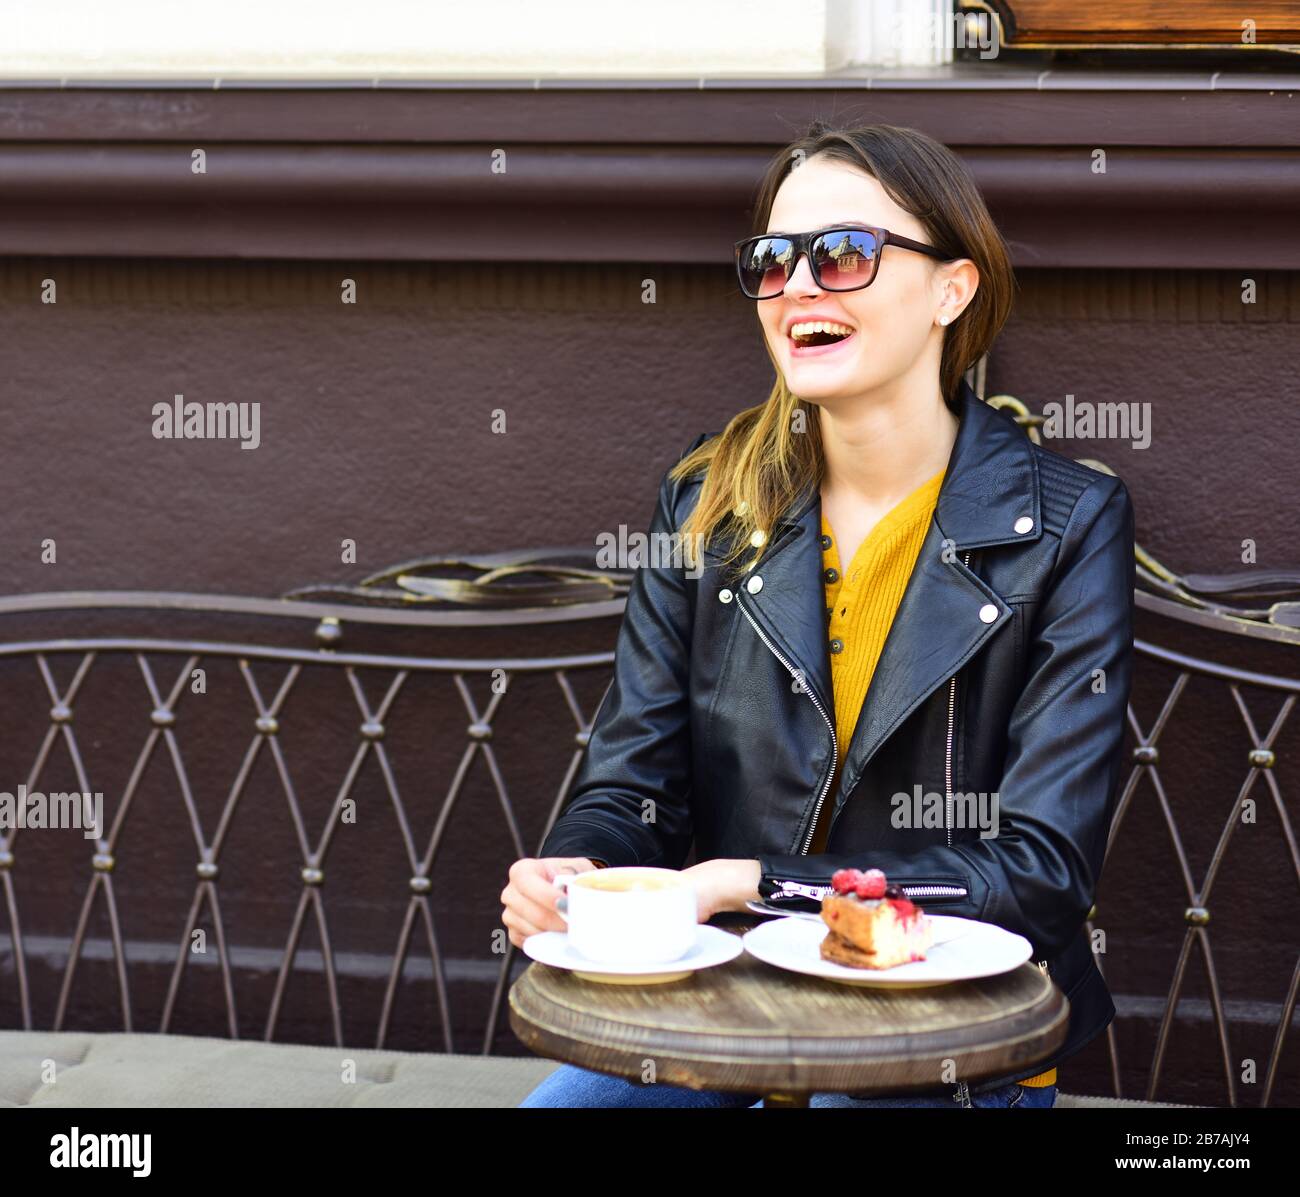 Fille dans des lunettes de soleil près de savoureux gâteau aux baies et café  sur la table sur fond de terrasse marron. Lady boit du café pendant la pause -café. Concept de pâtisserie